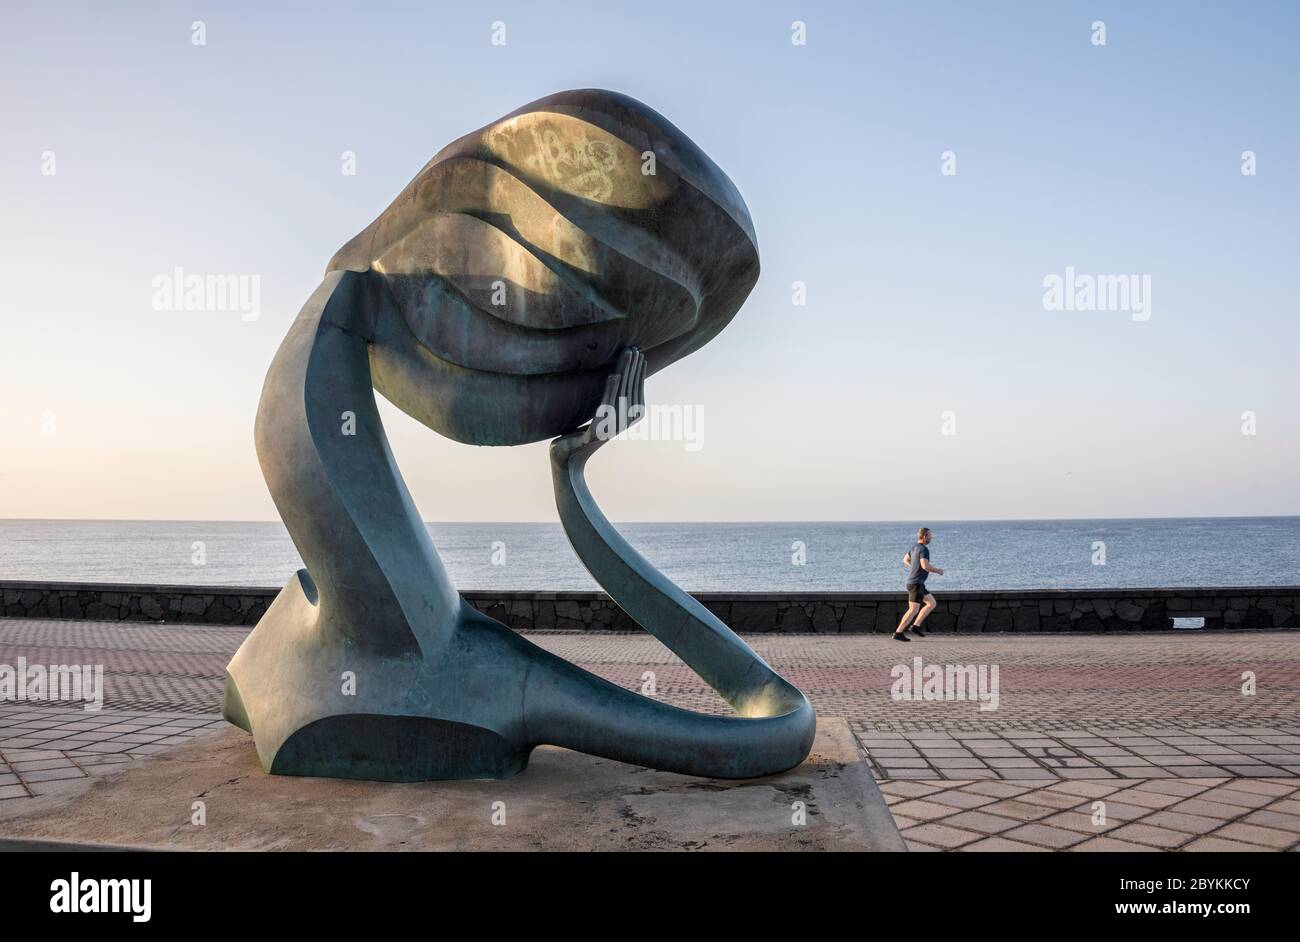 La sculpture du rêve du Millénaire (EL SUENO DEL MILENIO) au parc Tematico, Arrecife, Lanzarote Banque D'Images